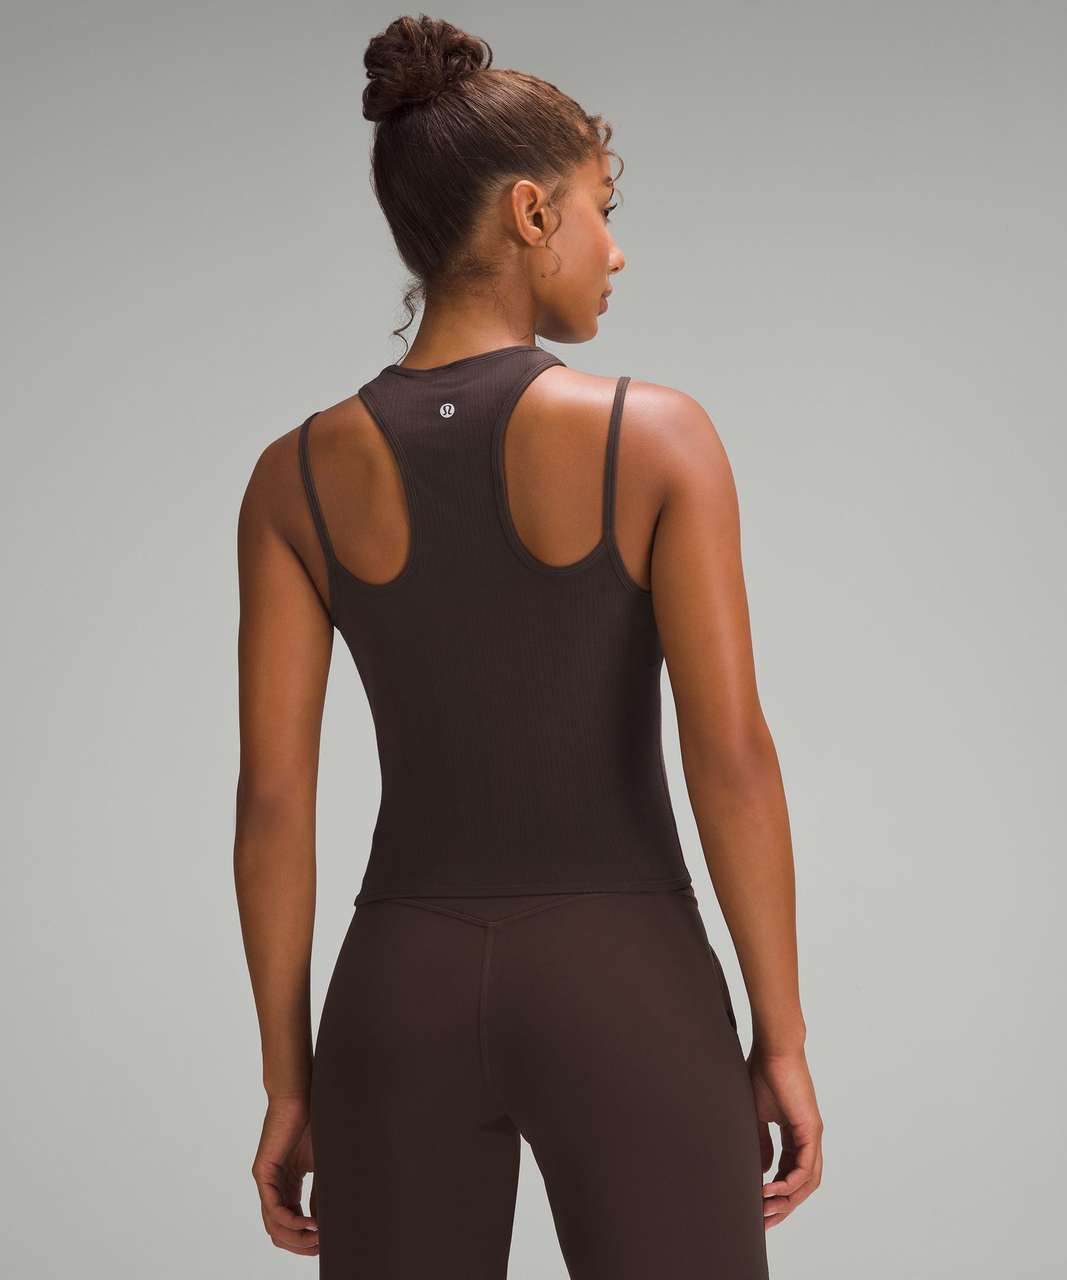 Lululemon Yoga Women's Sports Bra Sexy Beauty Strap Tank Top Removable Bra  ds72